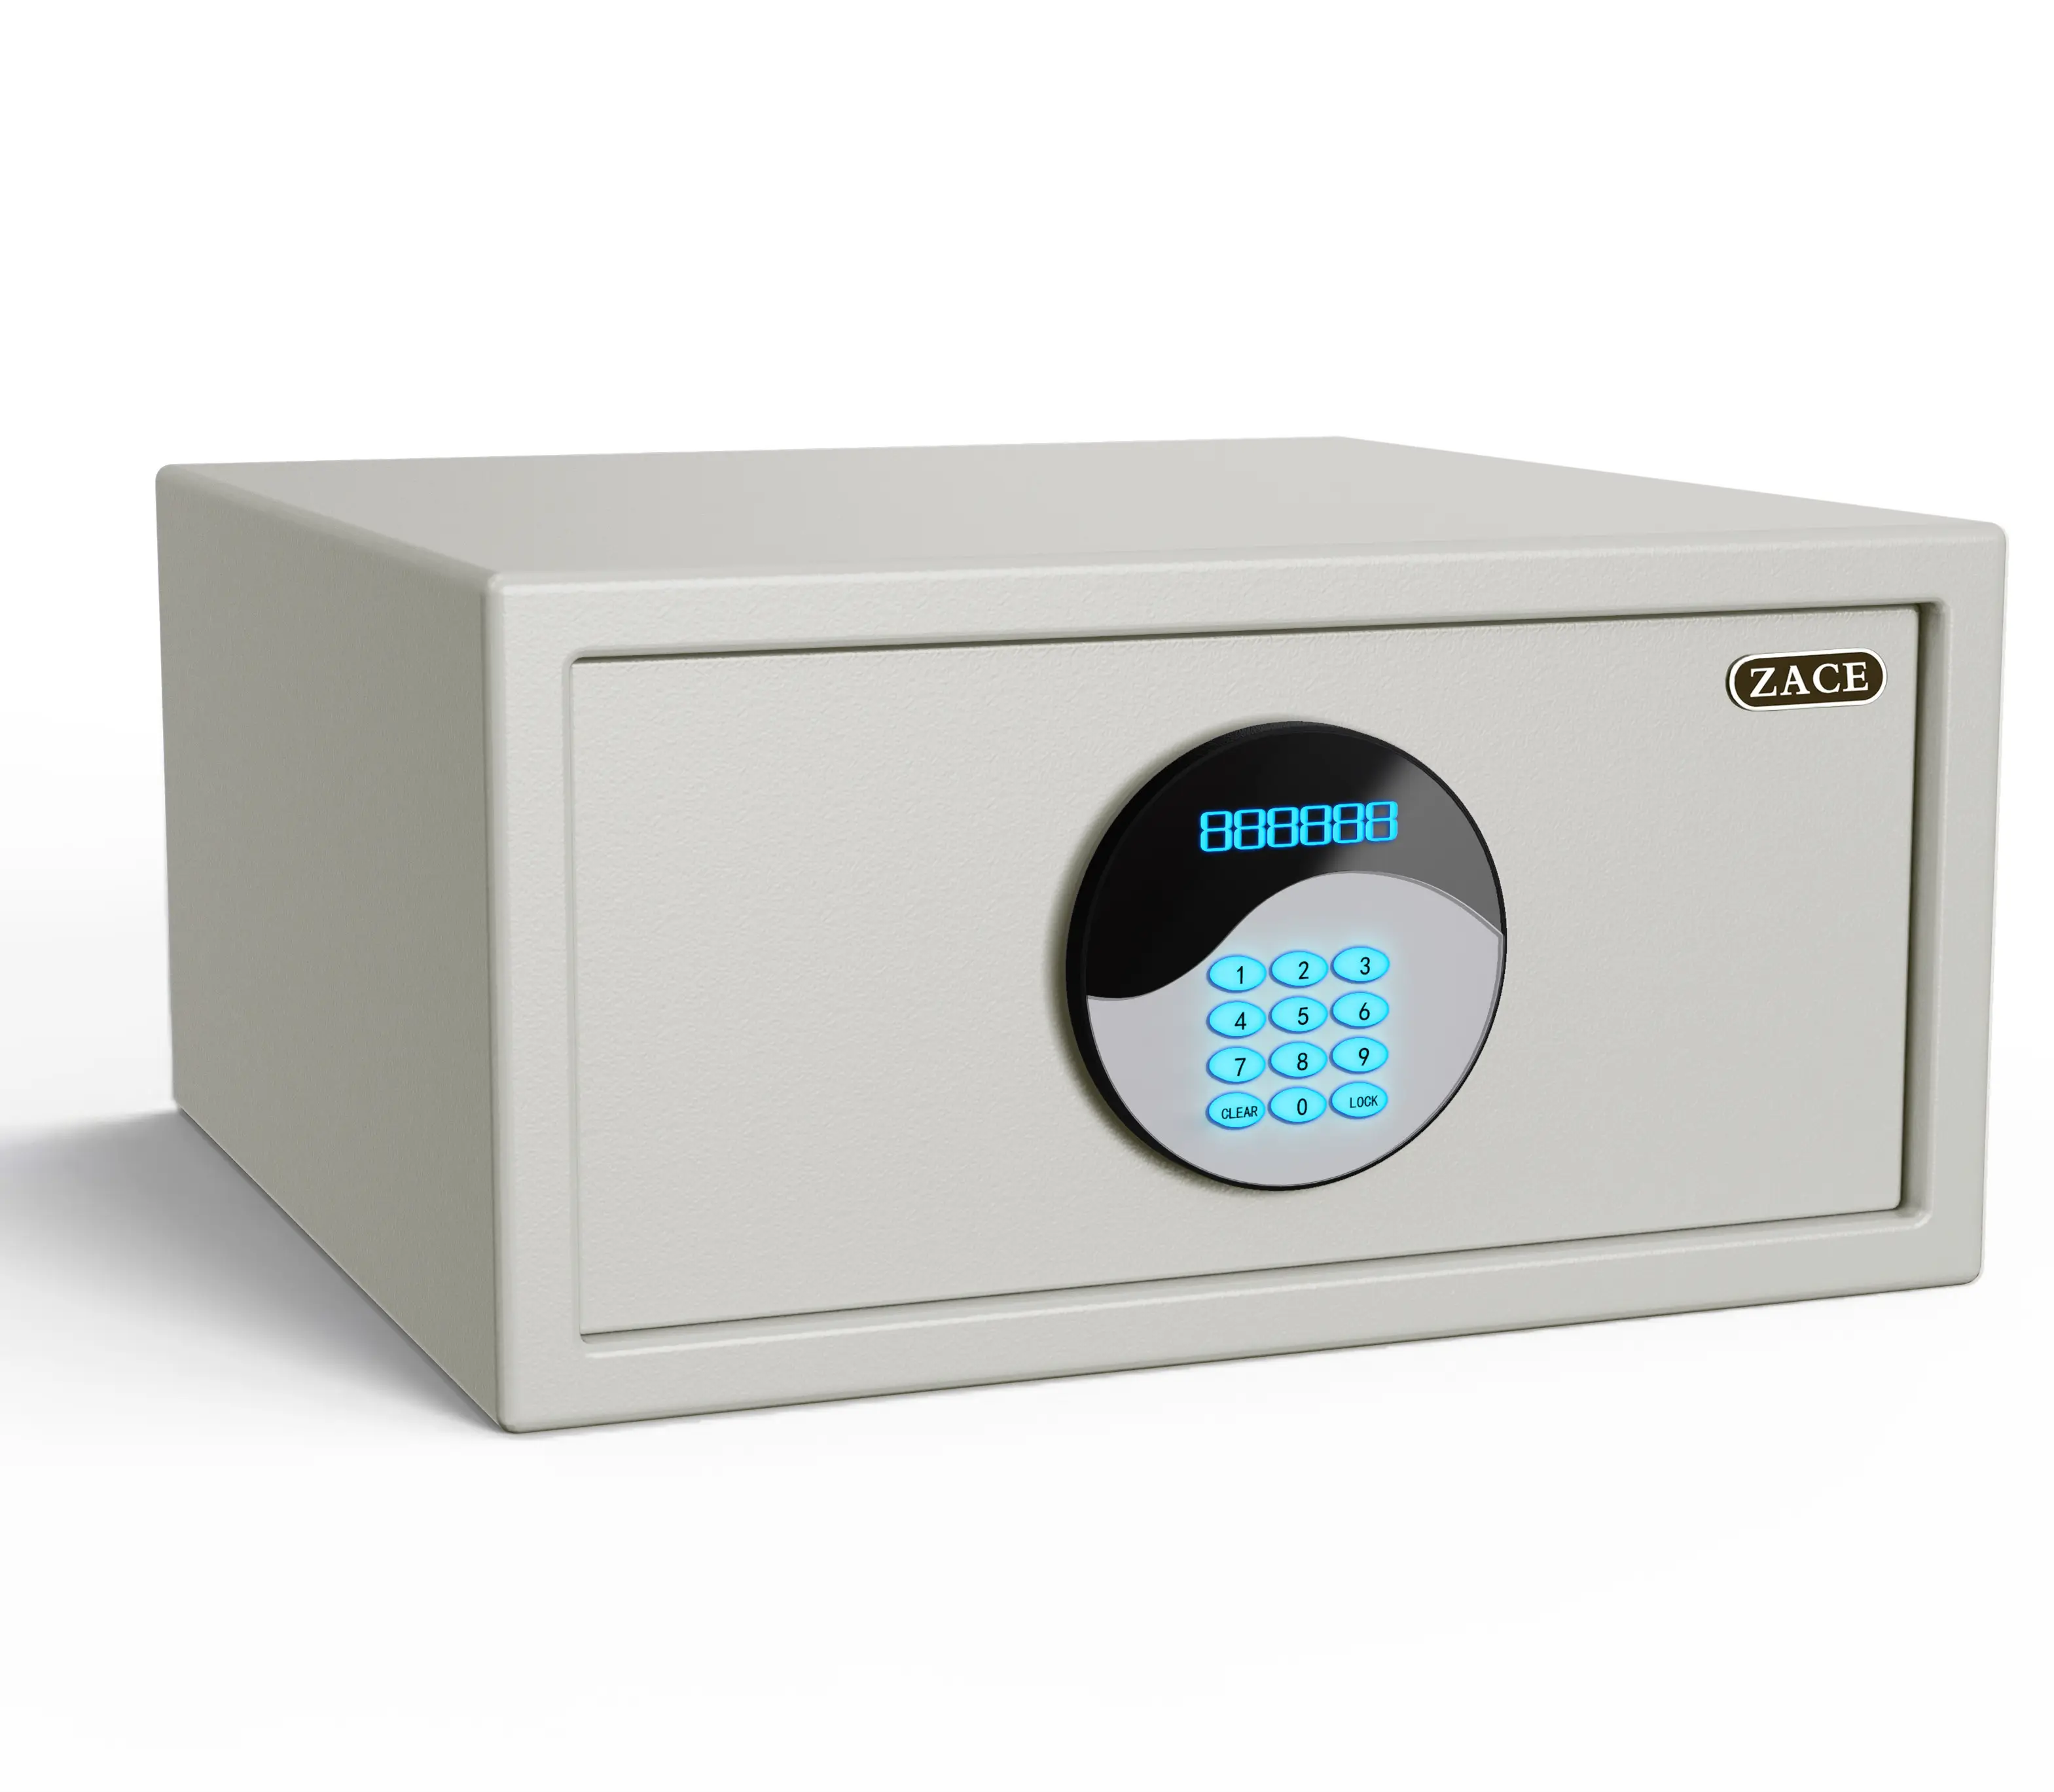 ZACE new design hotel electronic safe box gun safe box